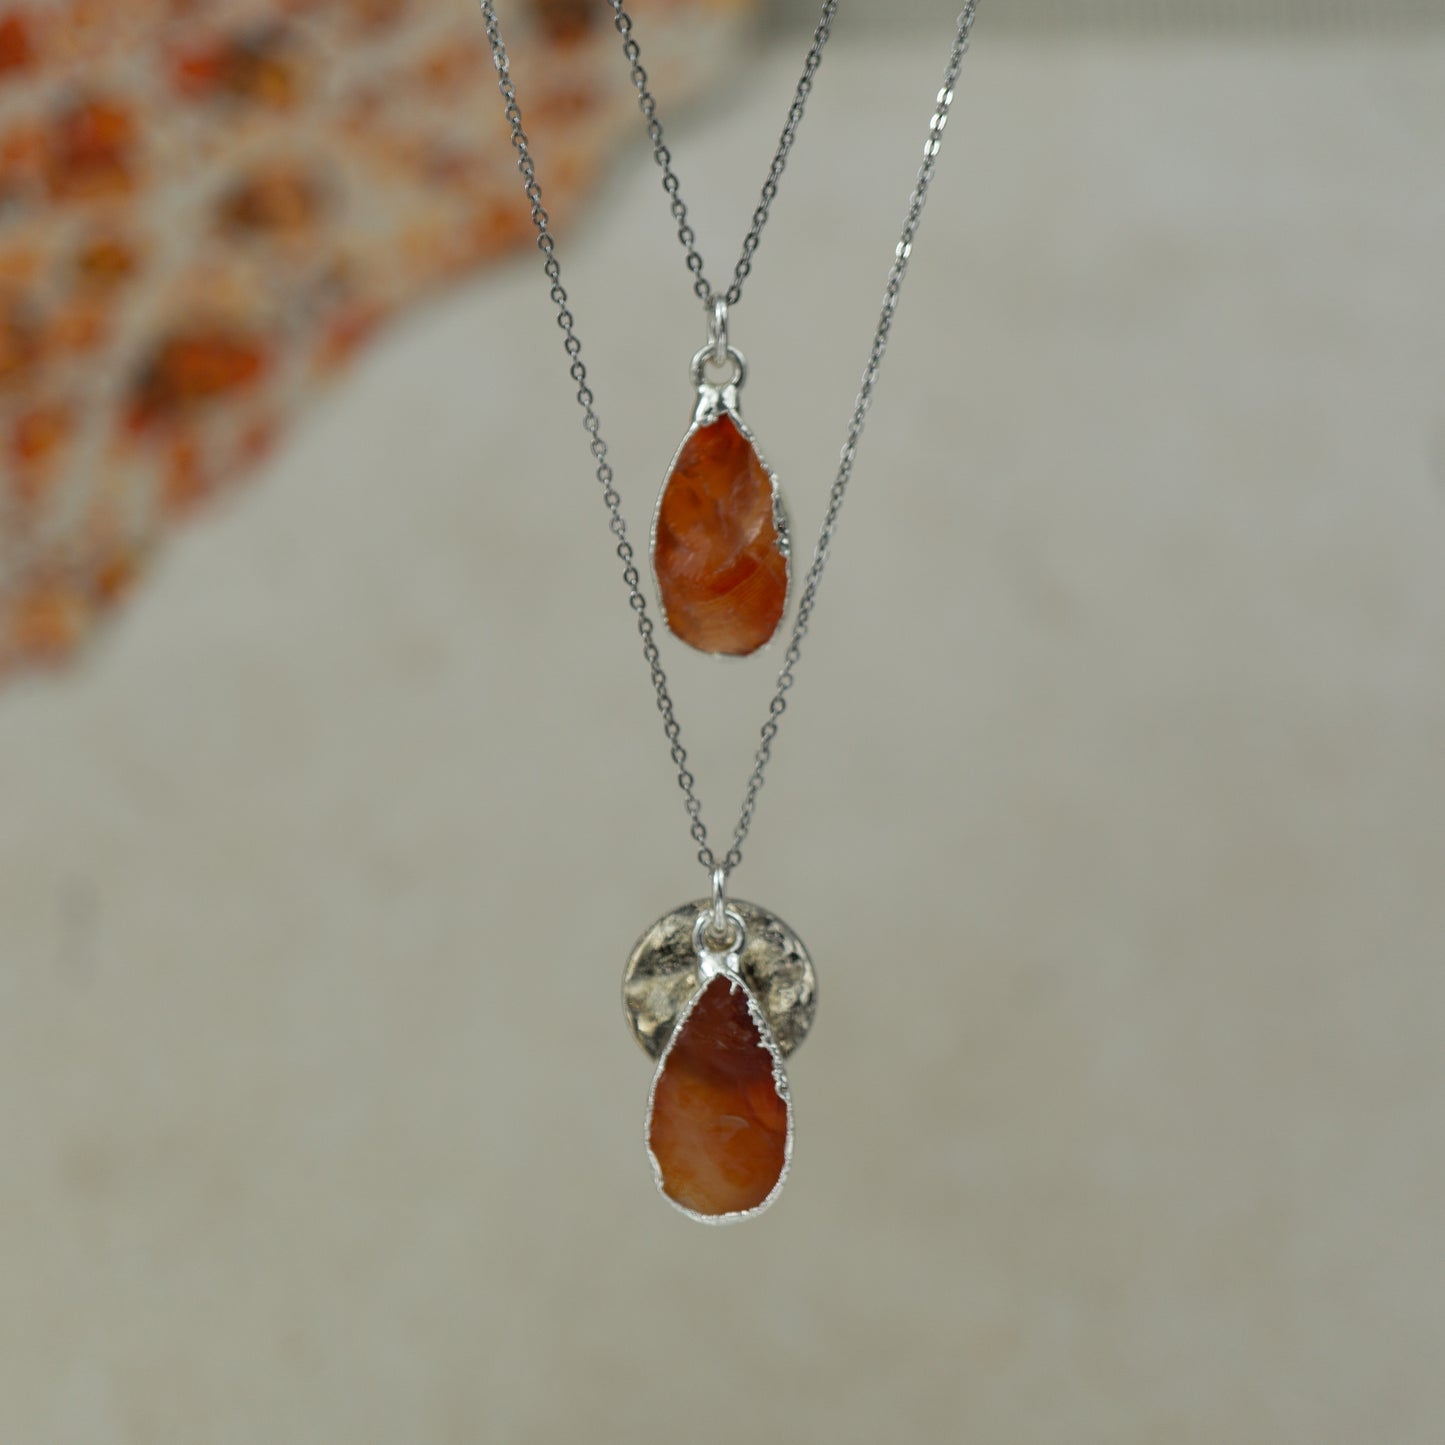 raw orange carnelian teardrop pear shaped pendants finished in silver on a chains.